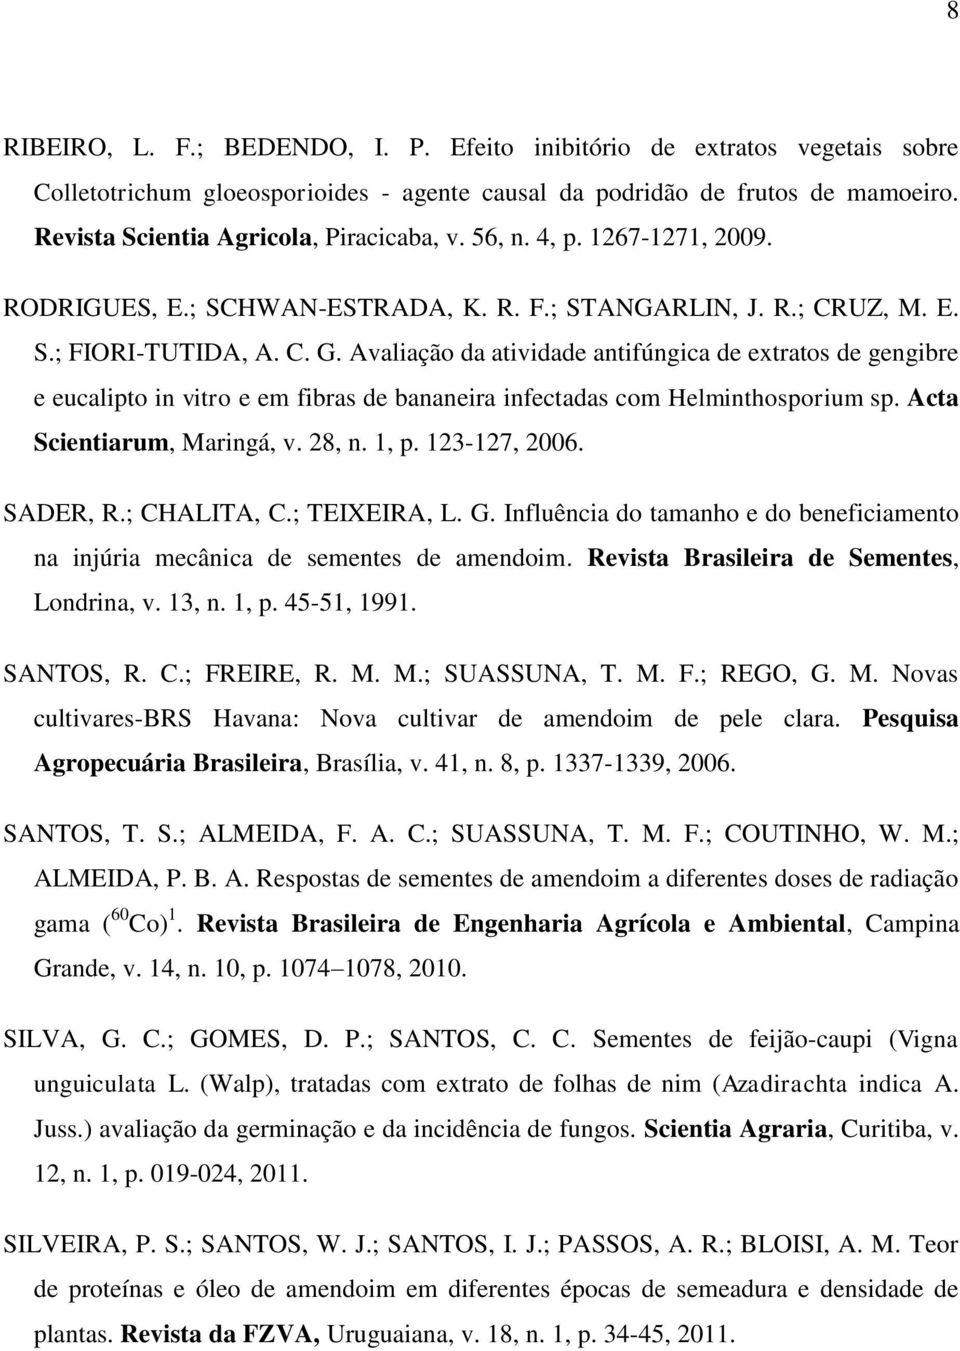 Avaliação da atividade antifúngica de extratos de gengibre e eucalipto in vitro e em fibras de bananeira infectadas com Helminthosporium sp. Acta Scientiarum, Maringá, v. 28, n. 1, p. 123-127, 2006.